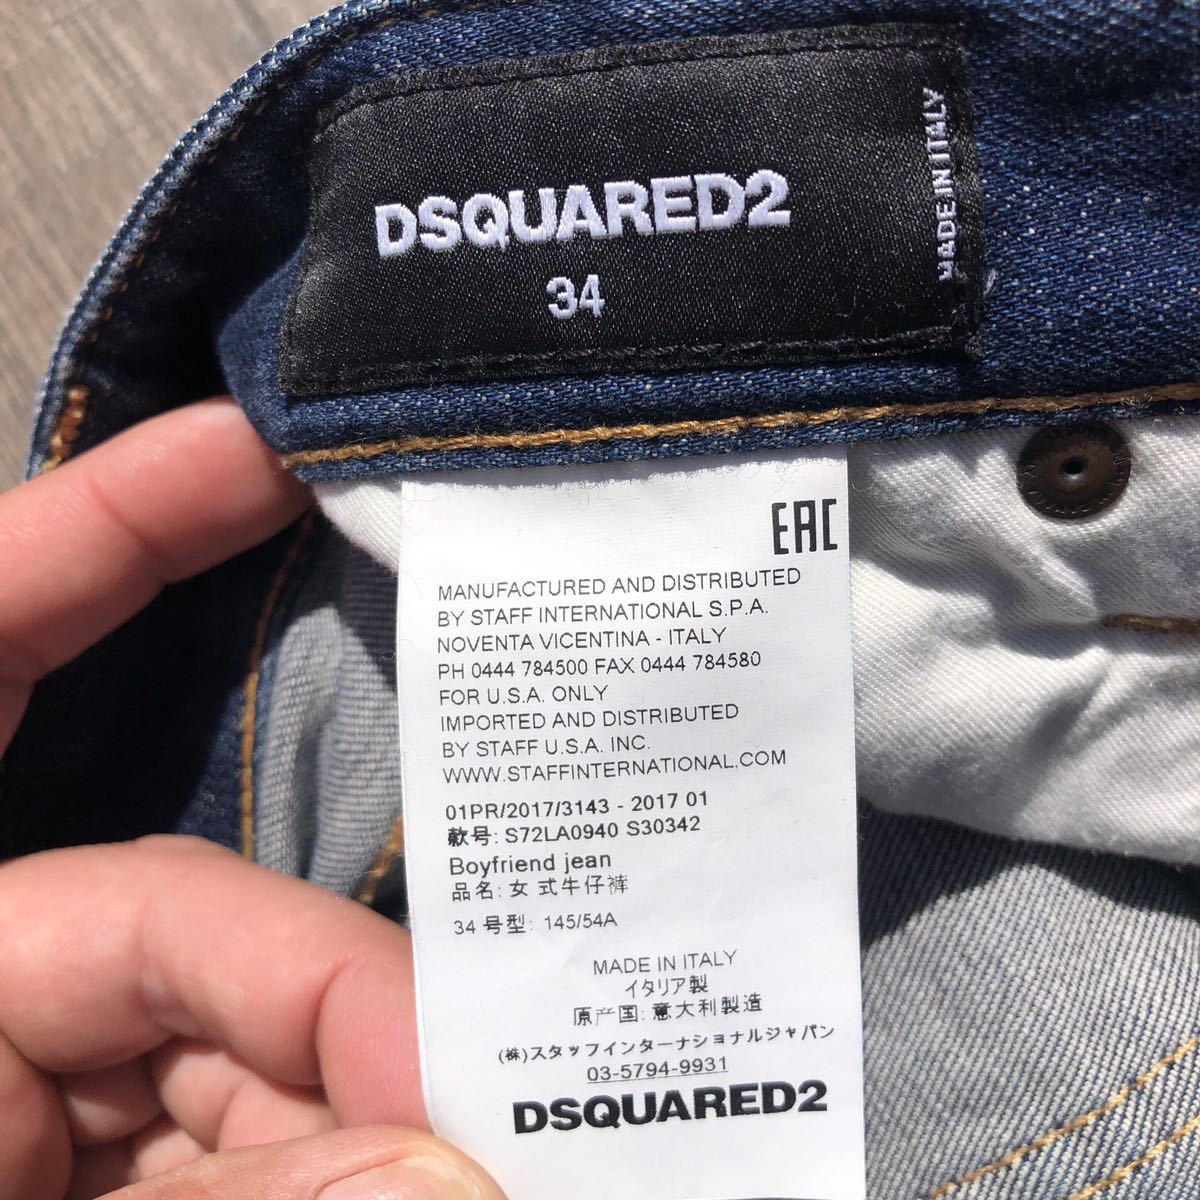  включая доставку прекрасный товар! Италия производства DSQUERED2. женский джинсы размер 34